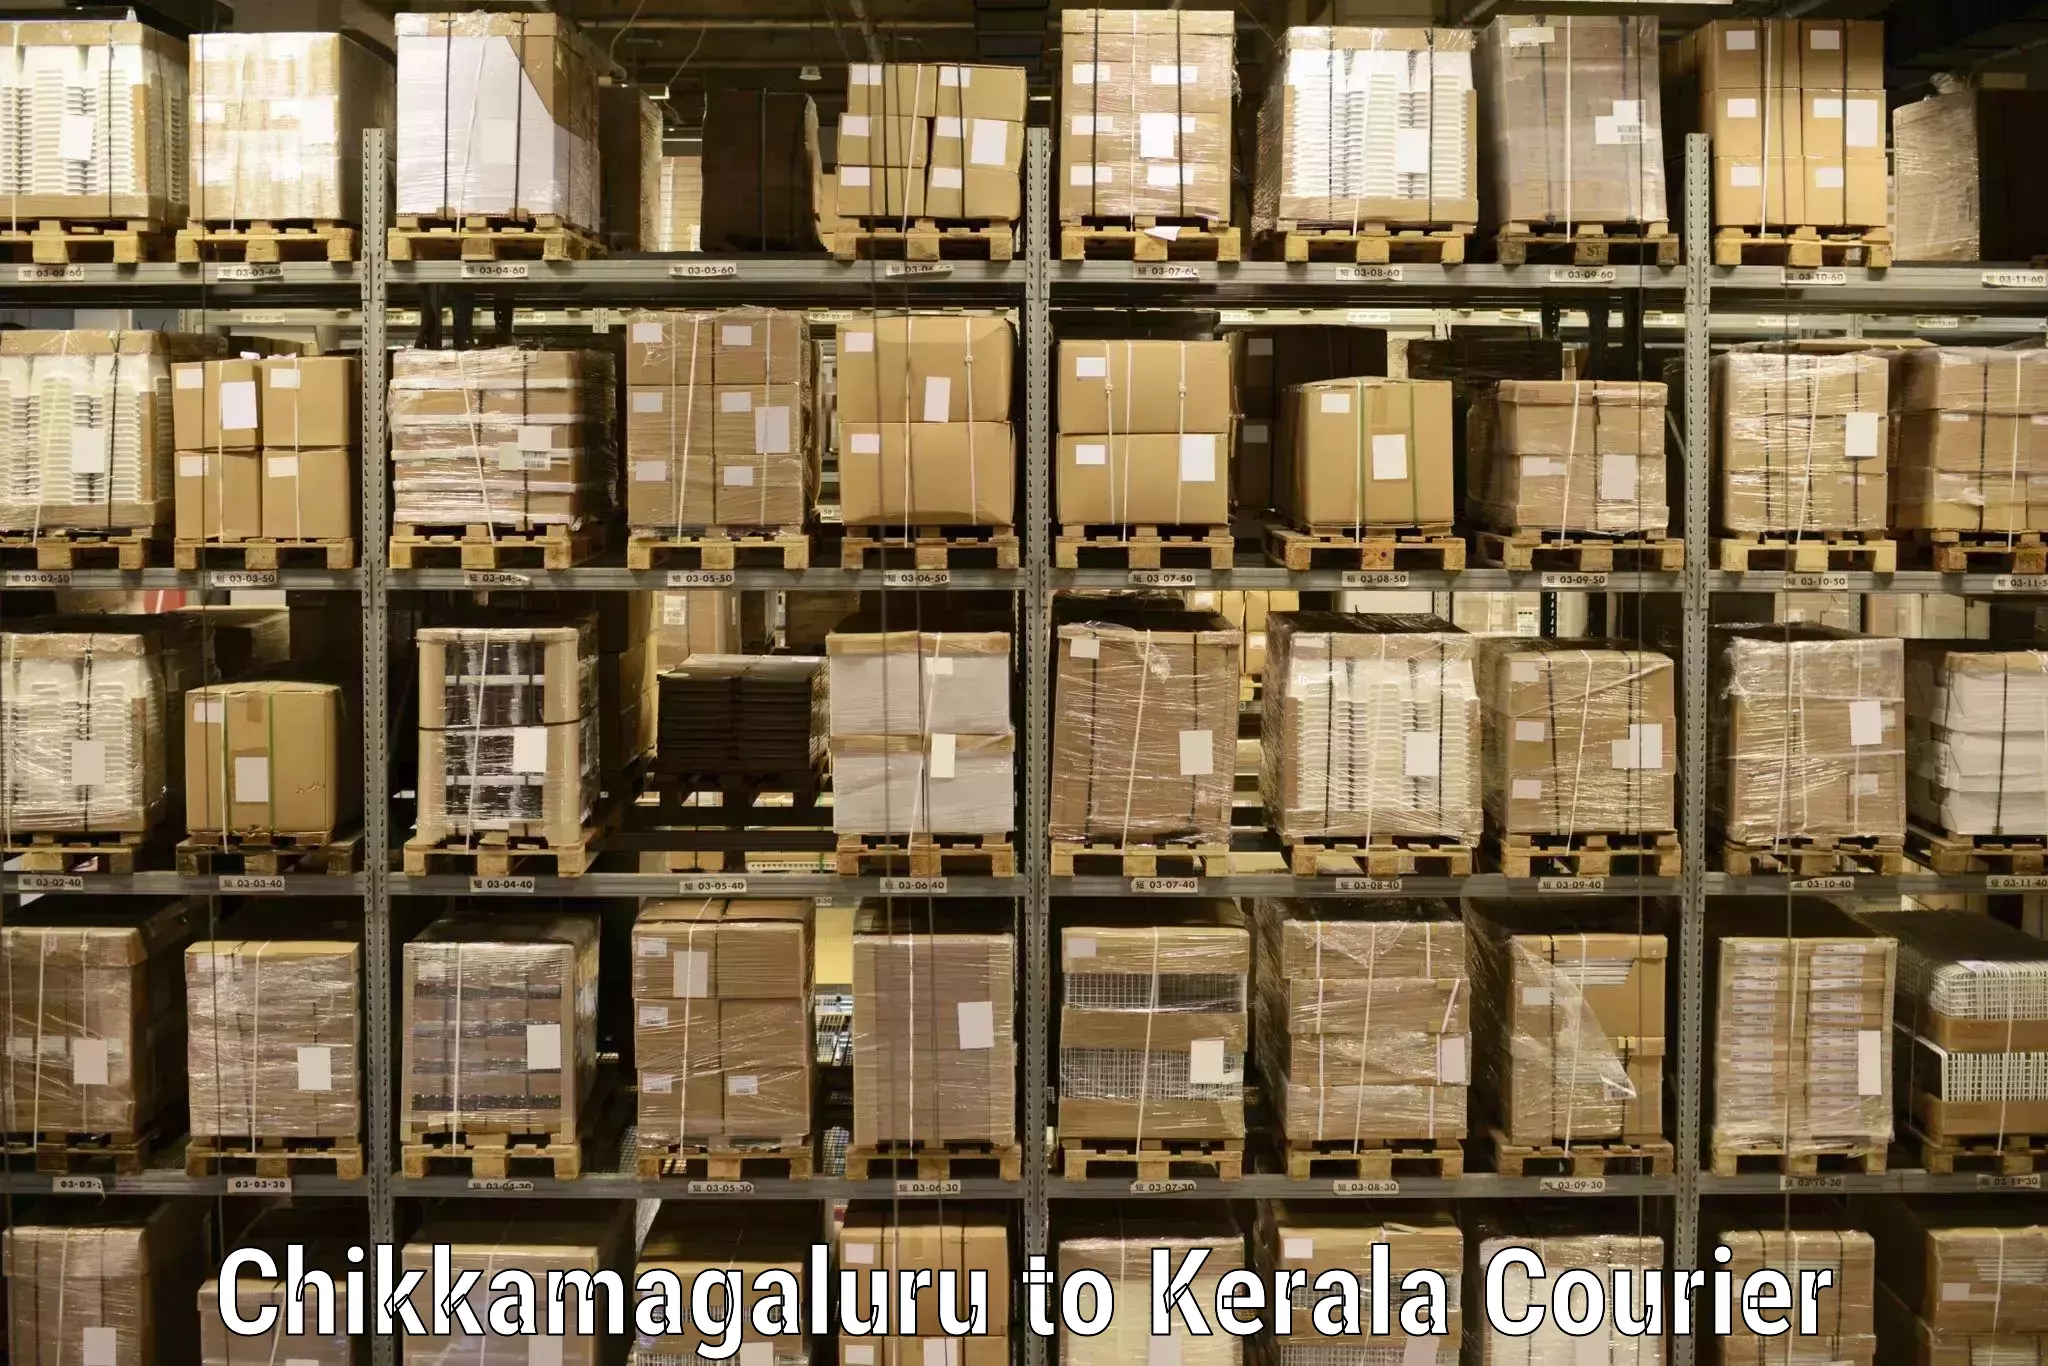 Efficient cargo handling Chikkamagaluru to Parippally